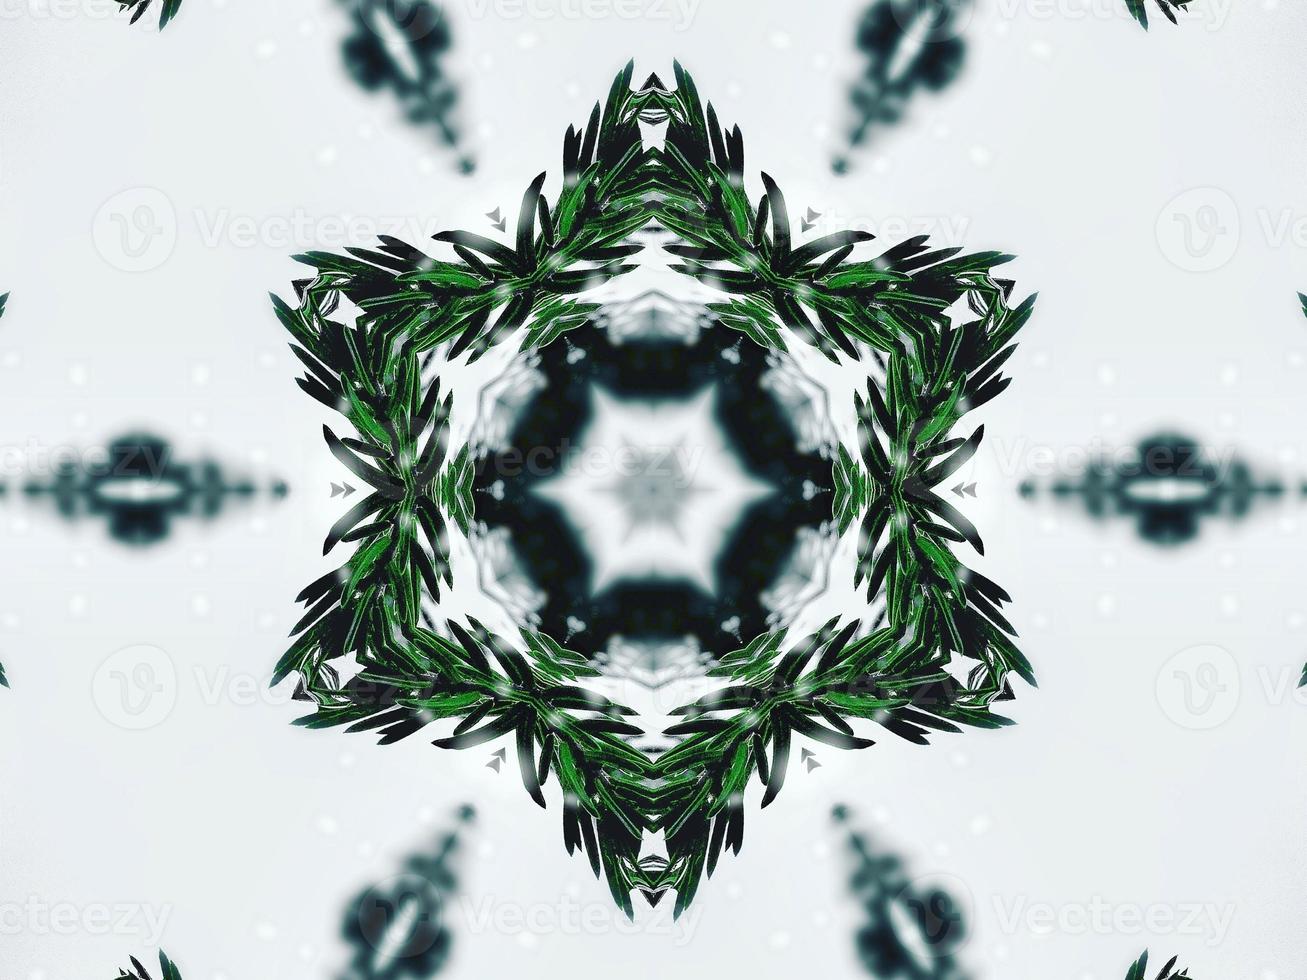 feuilles vertes floues fond kaléidoscope fleur abstraite et motif symétrique pour les vibrations de noël photo